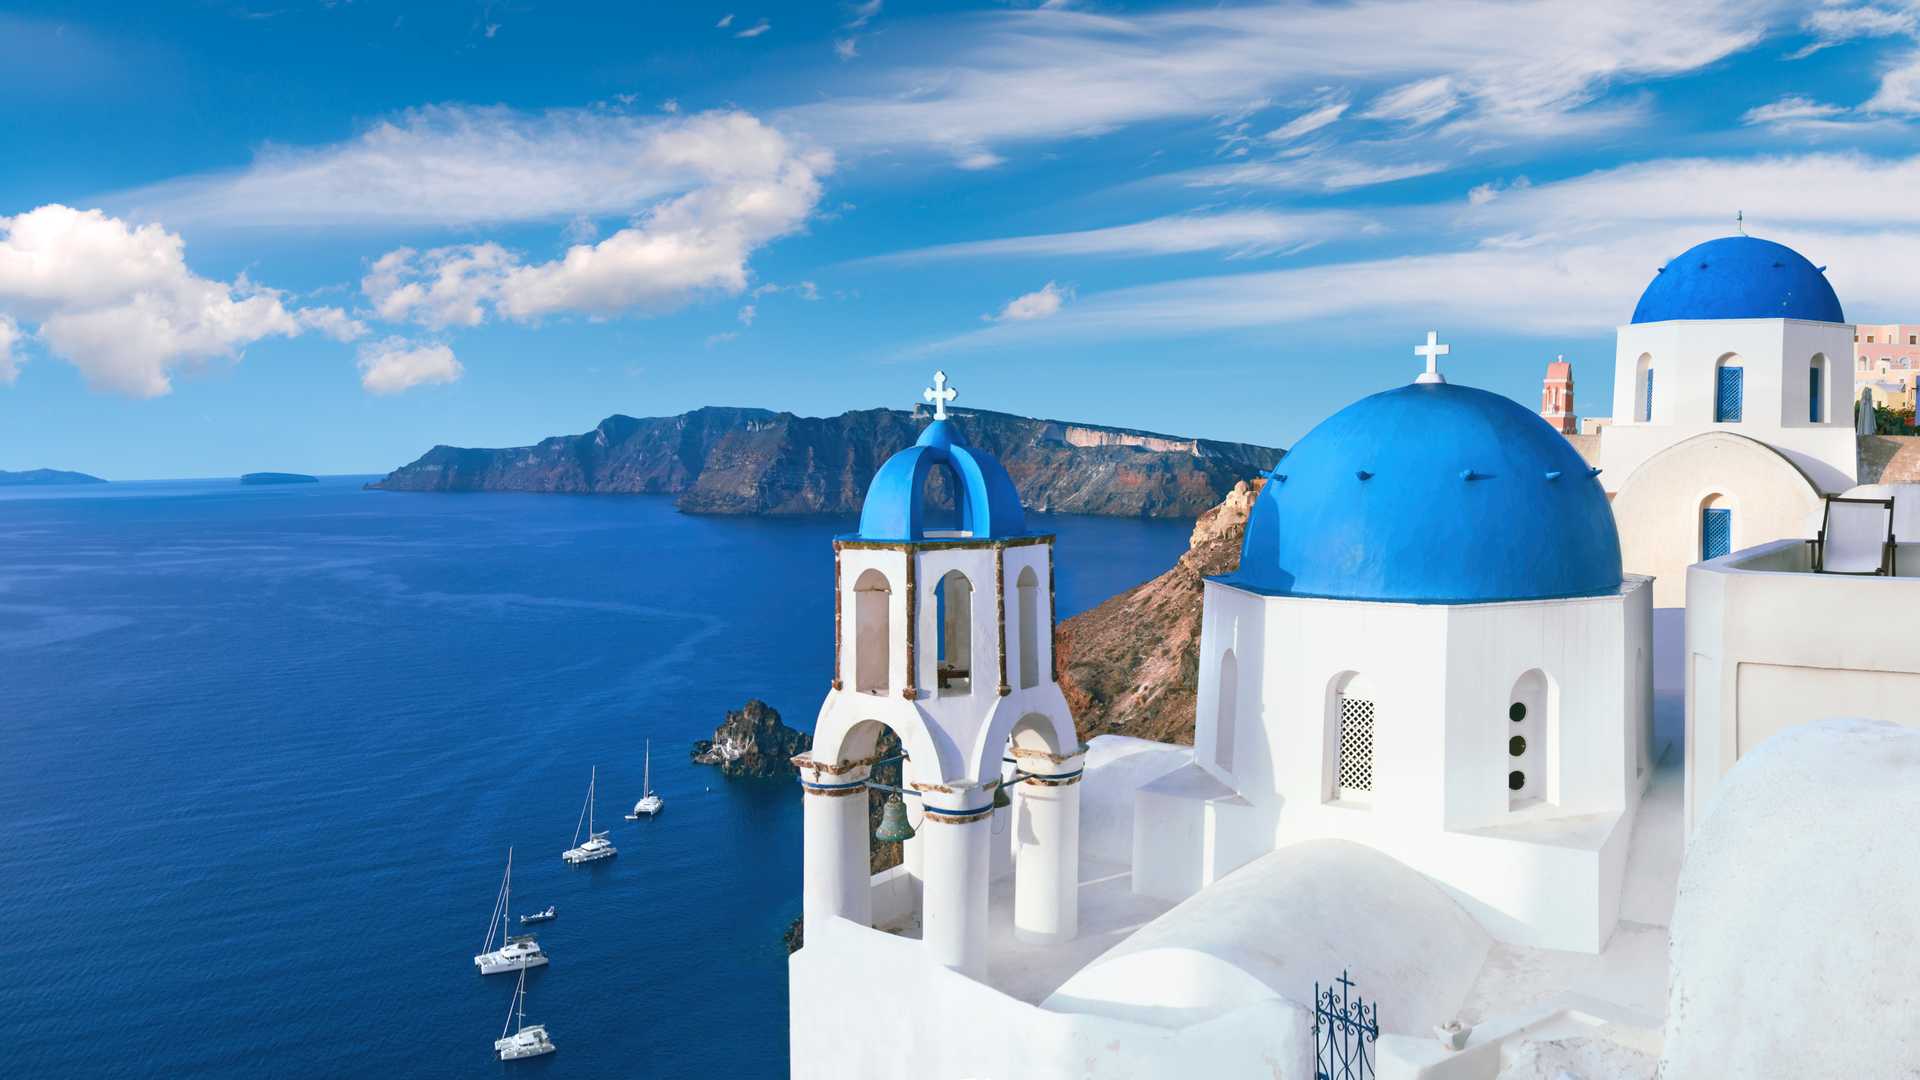 Řecko, Santorini, nejlevnější letenka : tip na letenku : tip na trip